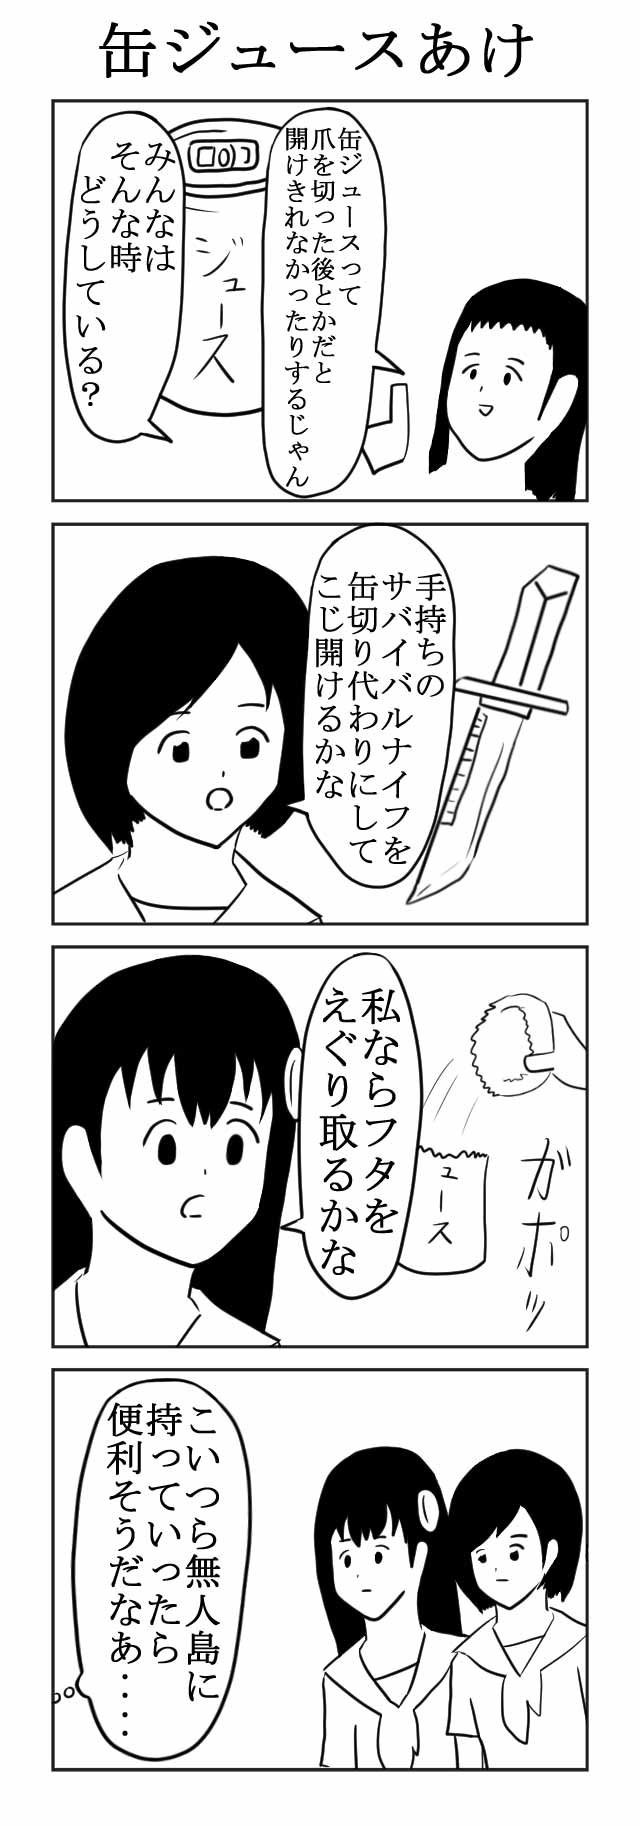 すっごく面白い四コマ漫画 第19回 ツイ4新人賞座談会 ツイ４